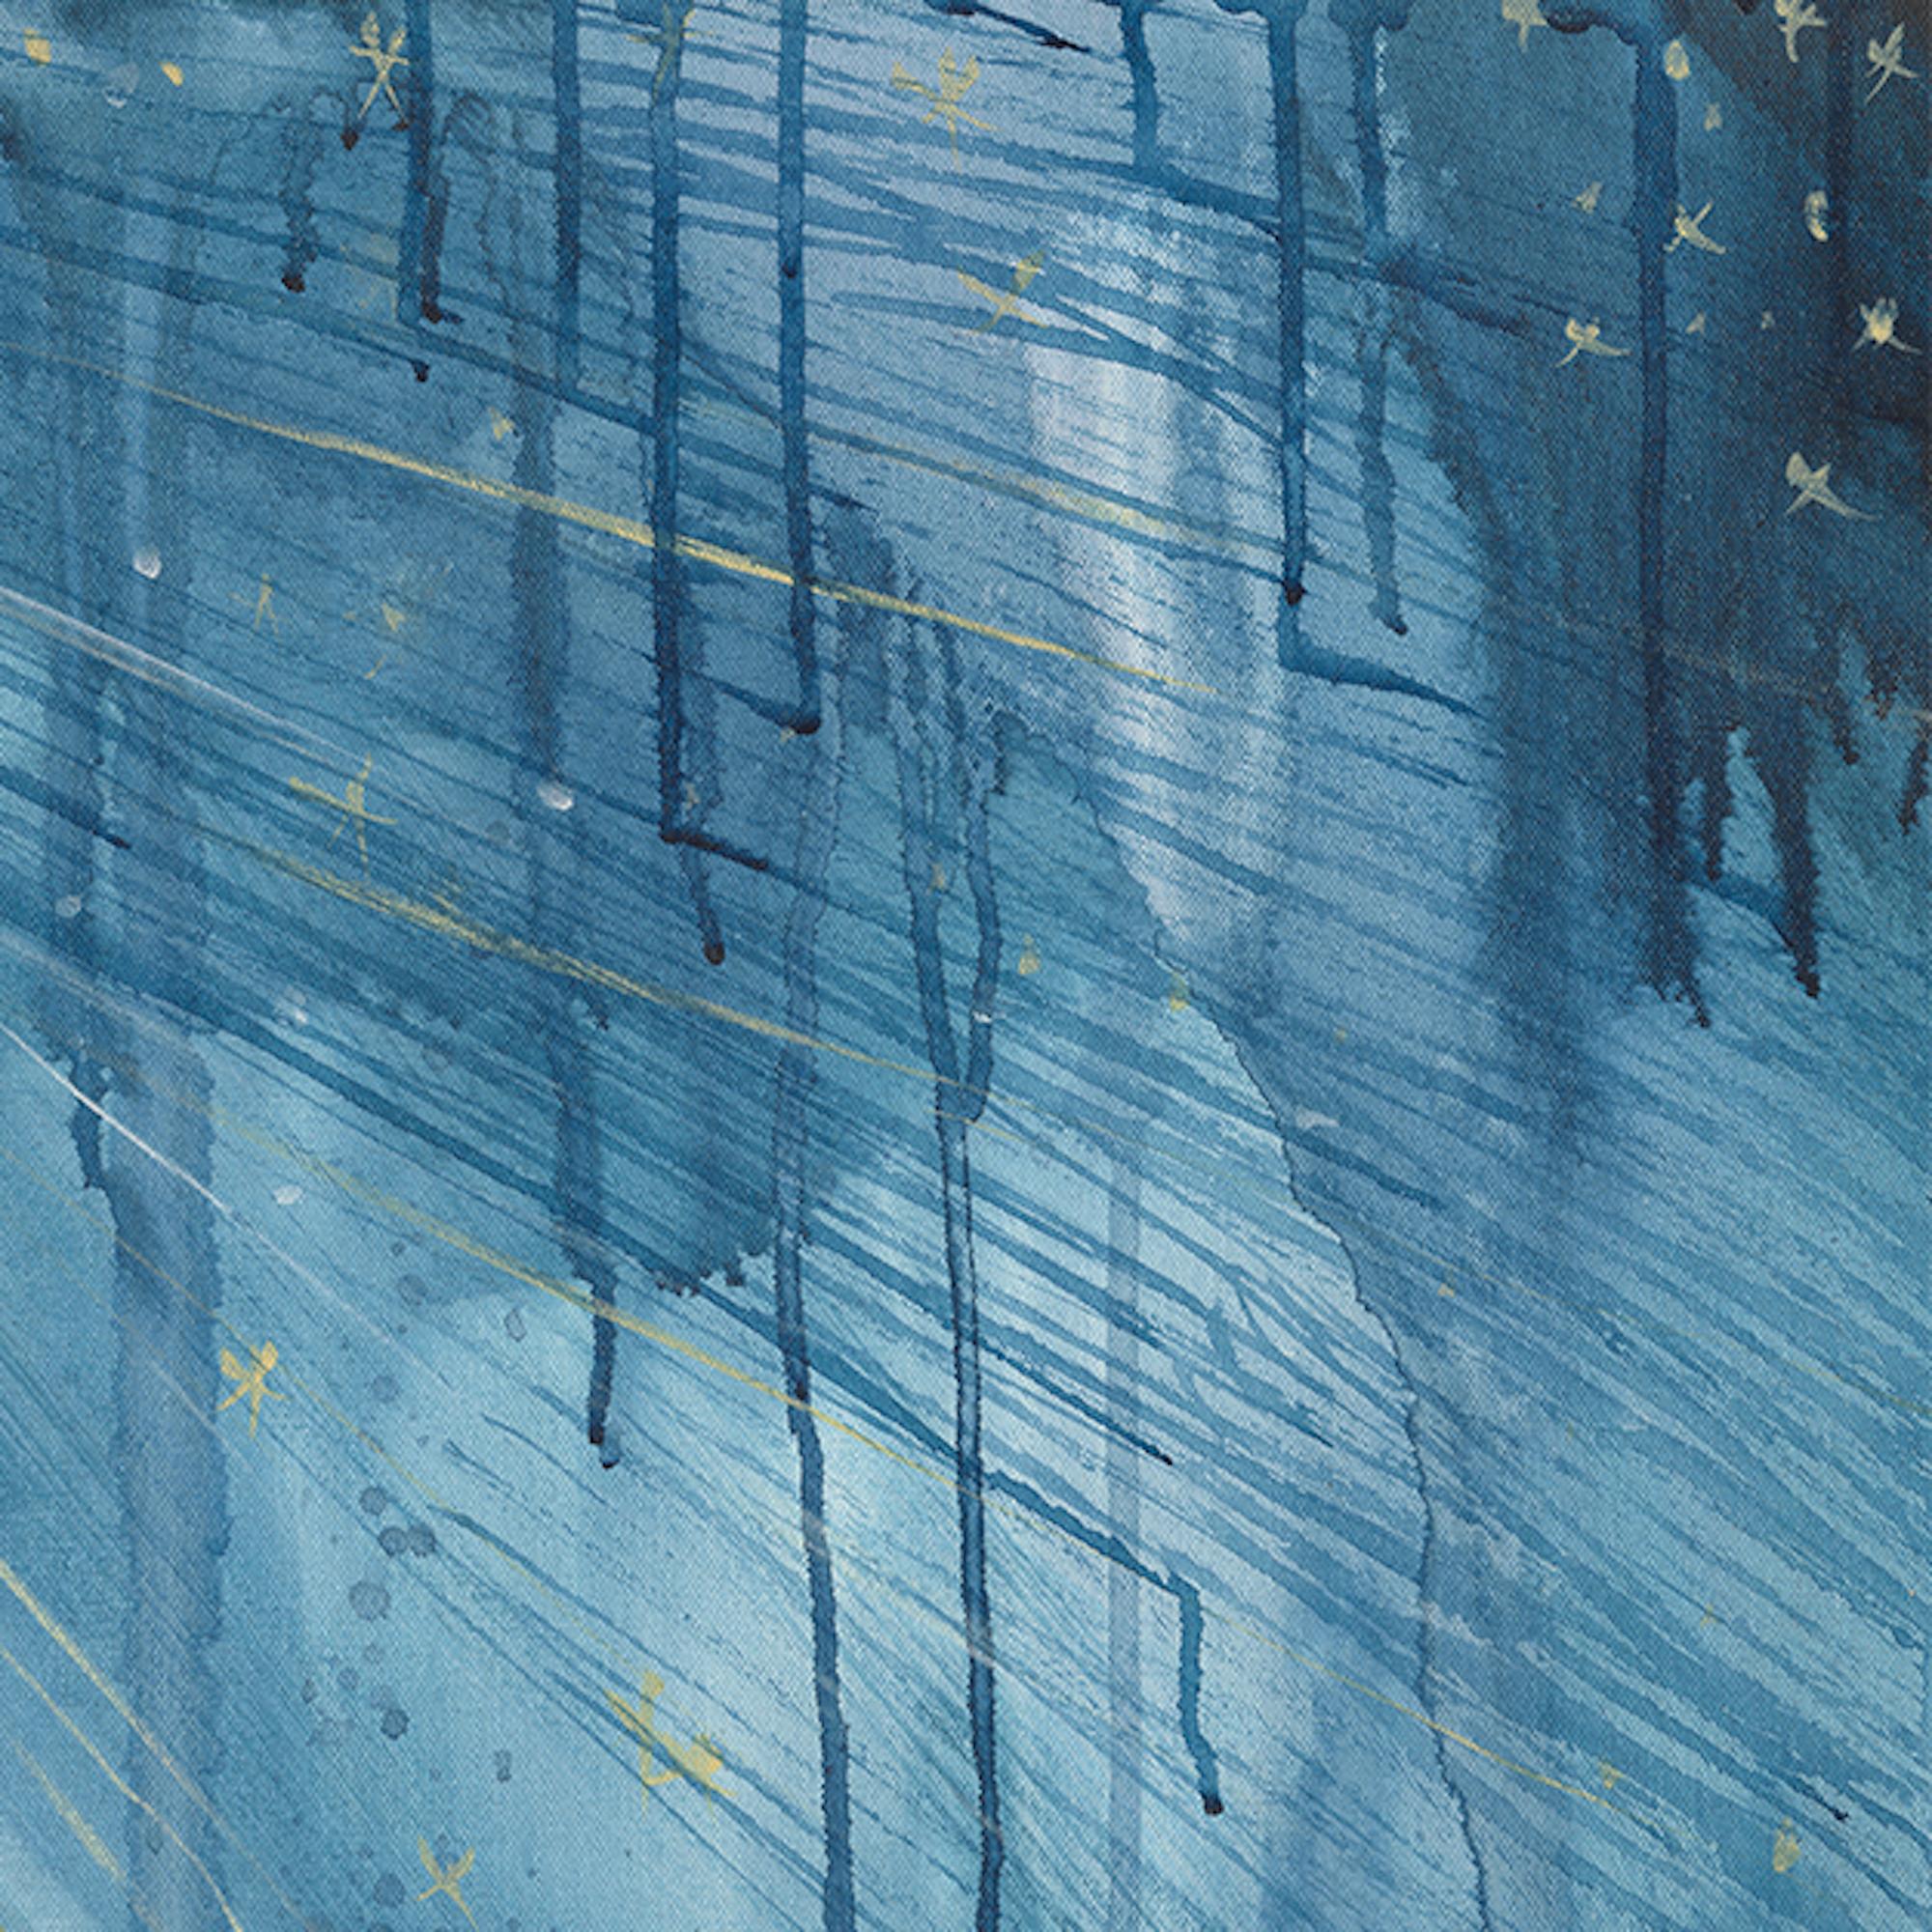  Abstraktes Celestial-Gemälde in Mischtechnik auf Leinwand, Blau, Gold, Weiß – Painting von Alex K. Mason